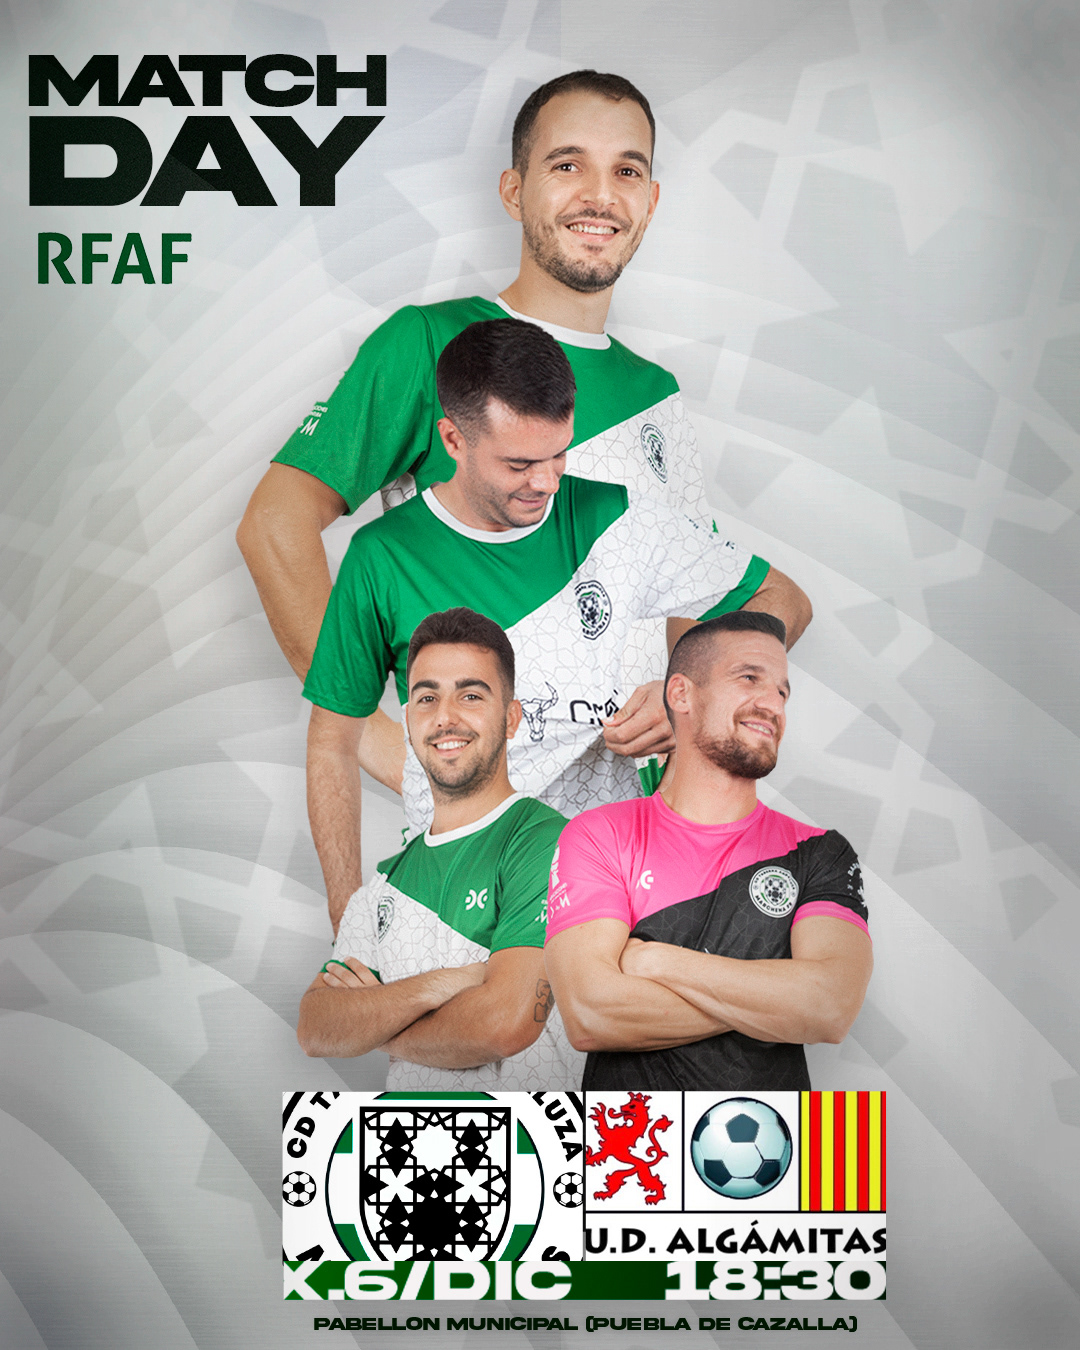 Futbol Fútbol sala matchday sportdesign footballdesign photoshop cartel deporte Equipo de Fútbol sportcreative